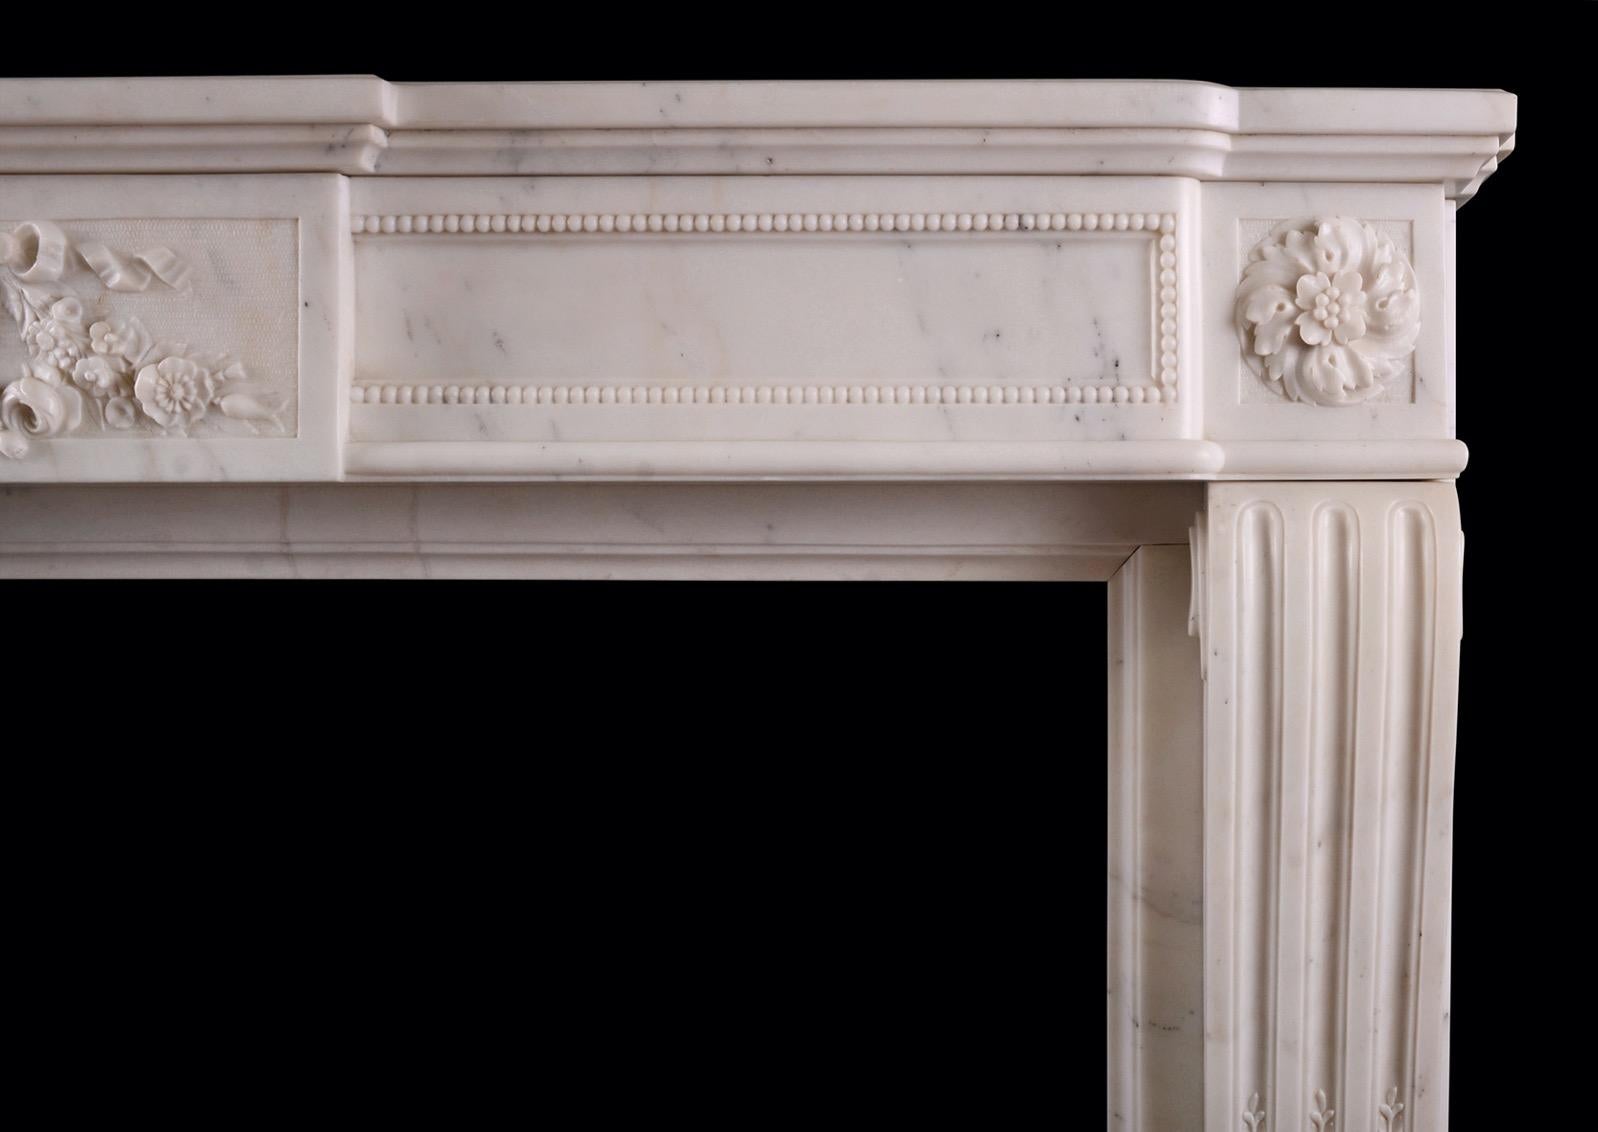 Ein hochwertiger französischer Kamin im Louis-XVI-Stil aus statuarischem weißem Marmor. Die geformten Pfosten mit Kanneluren, die mit Schalen beschnitzt sind, werden von Rosettenpaternen gekrönt. Der gewölbte Fries mit feiner Schnitzerei und